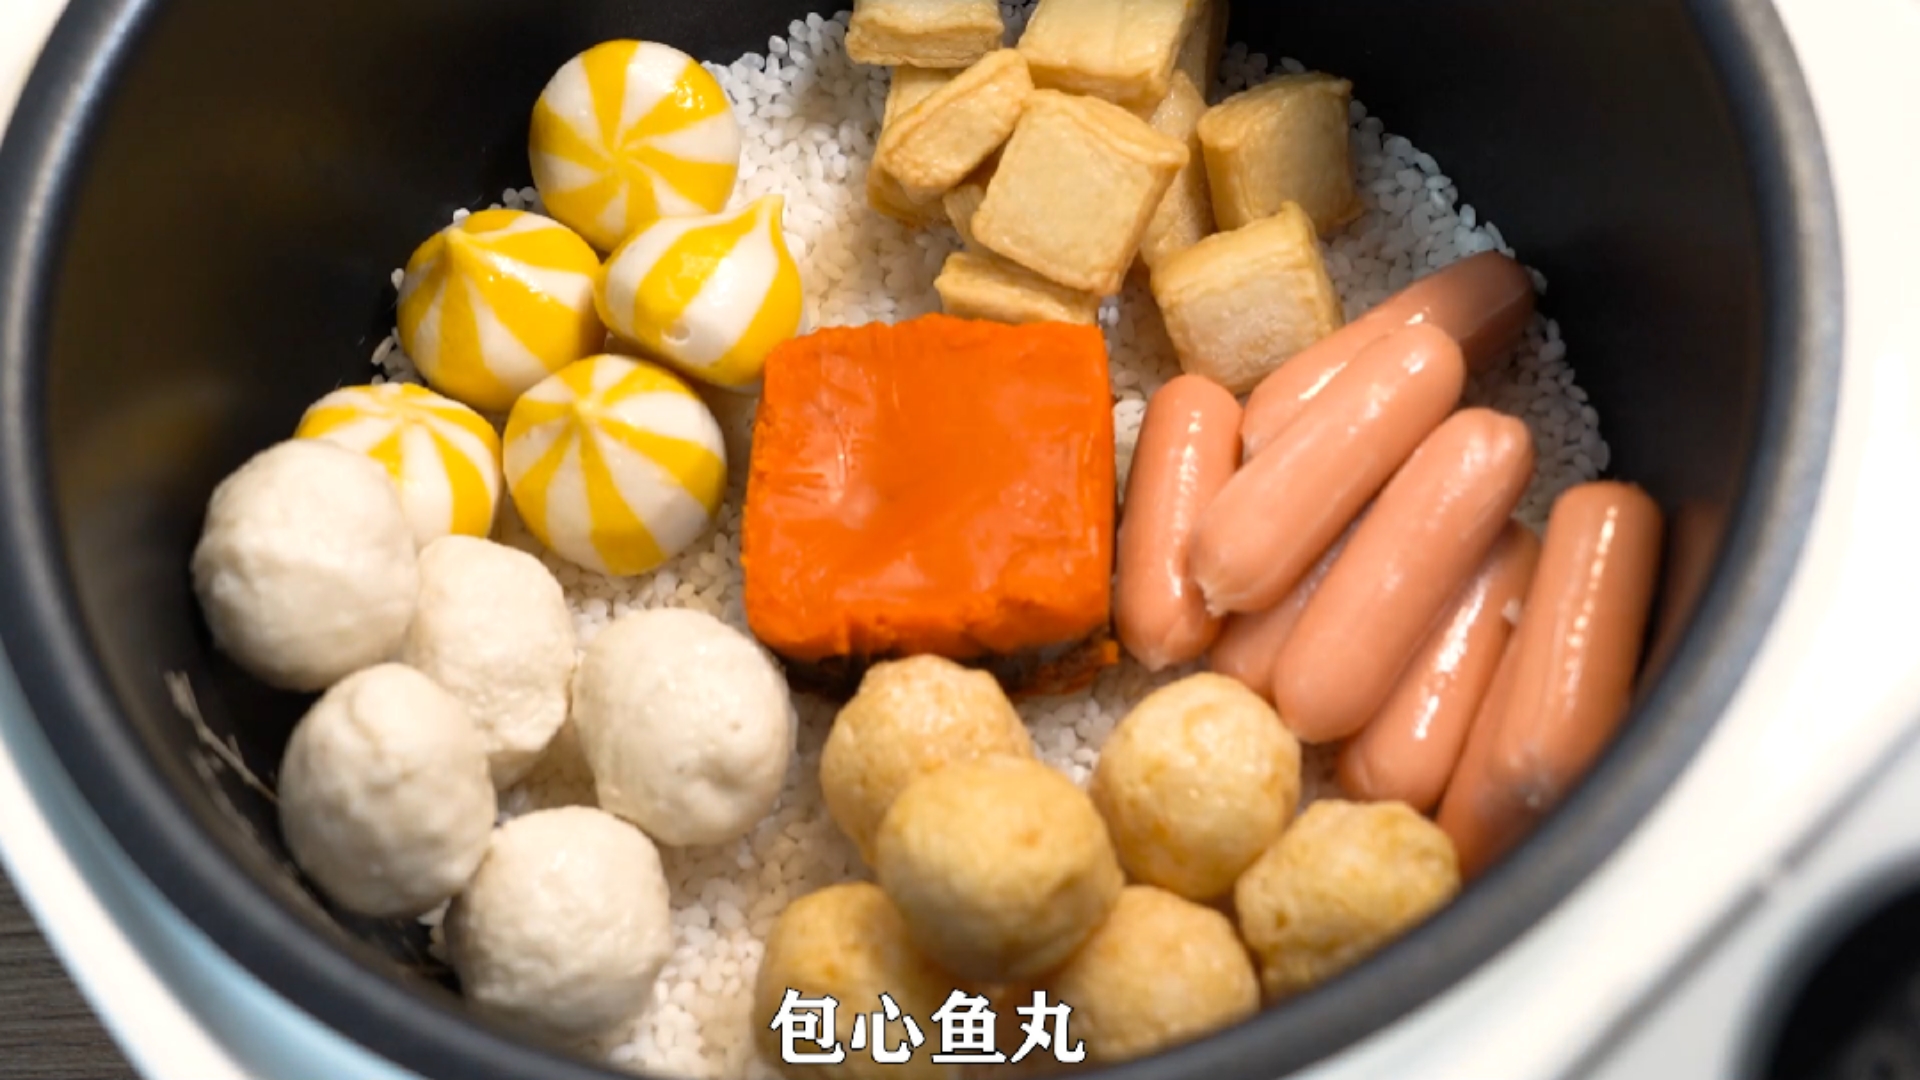 火锅丸子焖饭图片